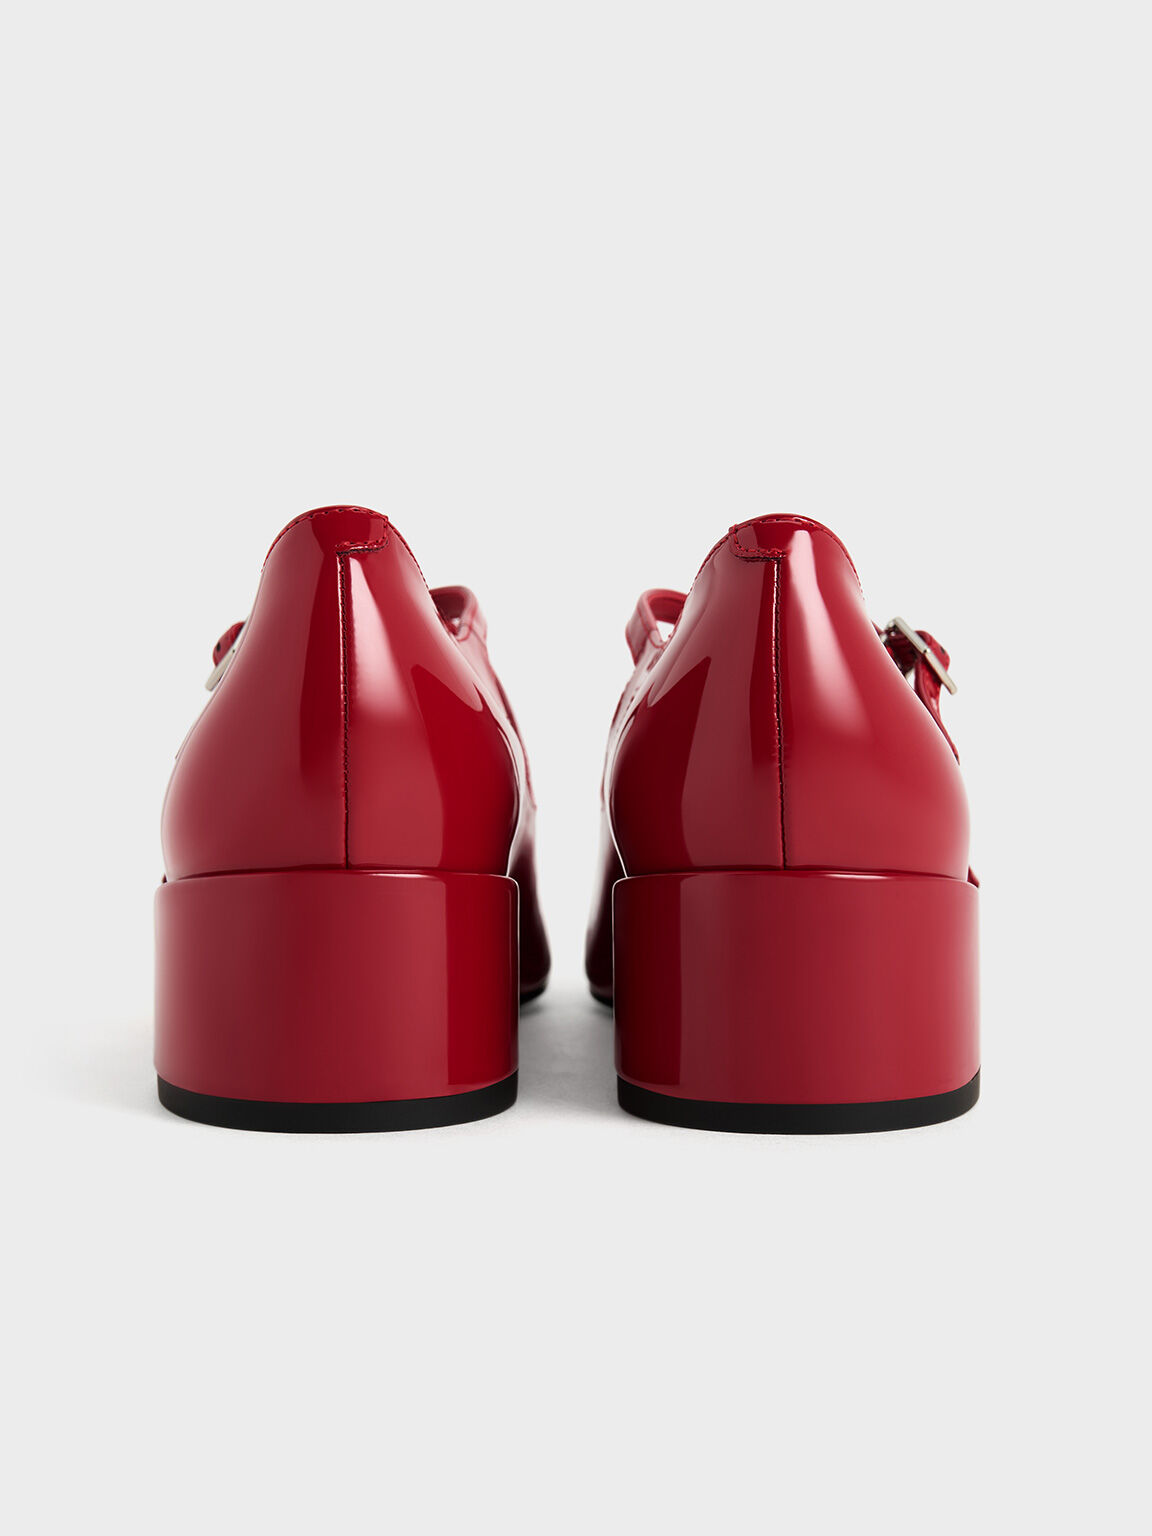 รองเท้าแมรี่เจนหนังแก้วเสริมส้นบล็อคดีไซน์สายคาดแบบไขว้, สีแดง, hi-res